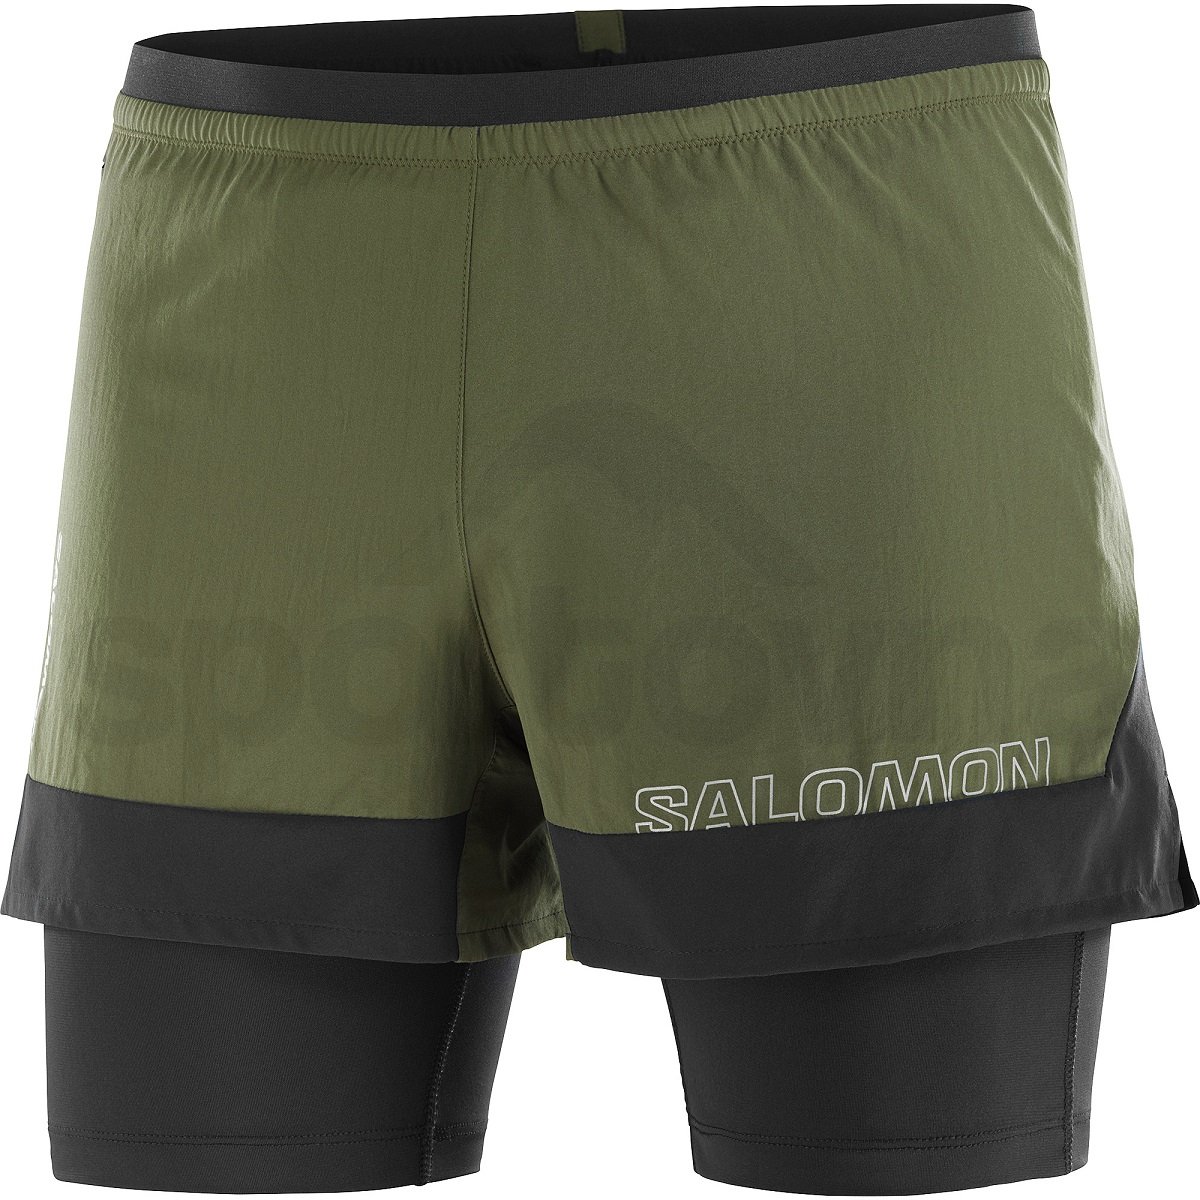 Kraťasy Salomon Cross 2IN1 Shorts M - zelená/černá